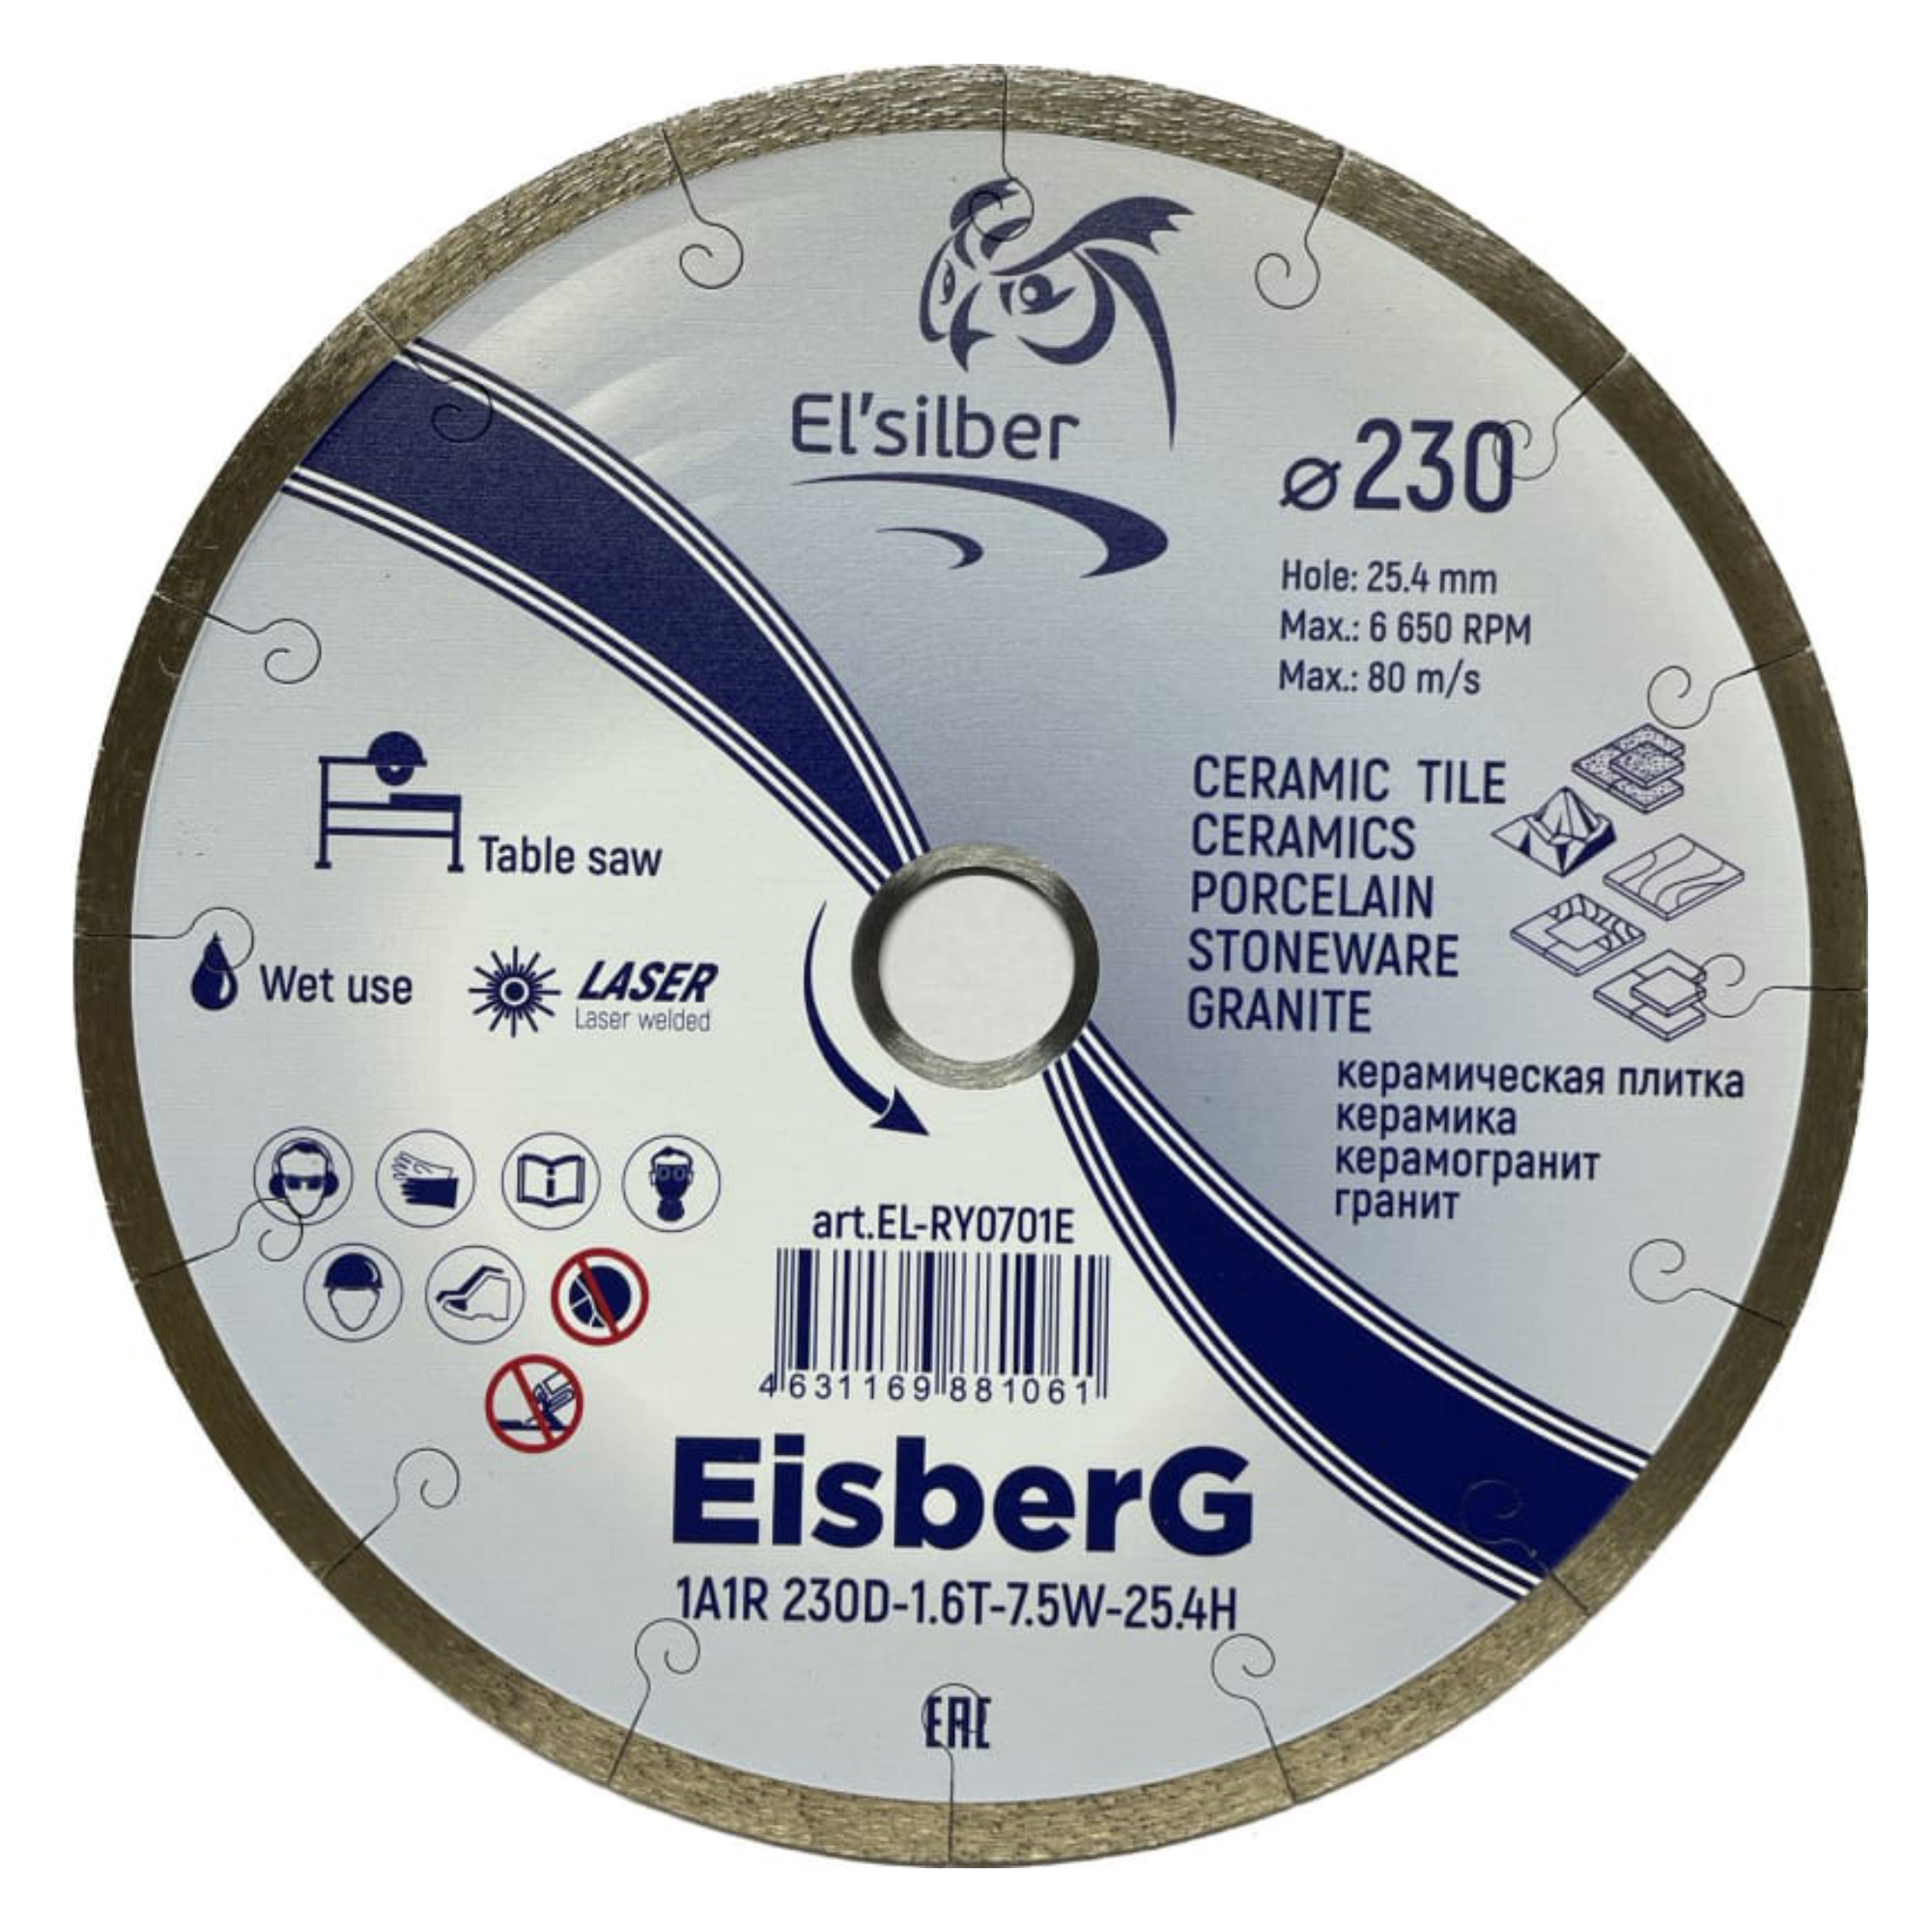 Круг алмазный Elsilber "EisberG" 1A1R D230-1.6T-7.5W-25.4H EL-RY0701E